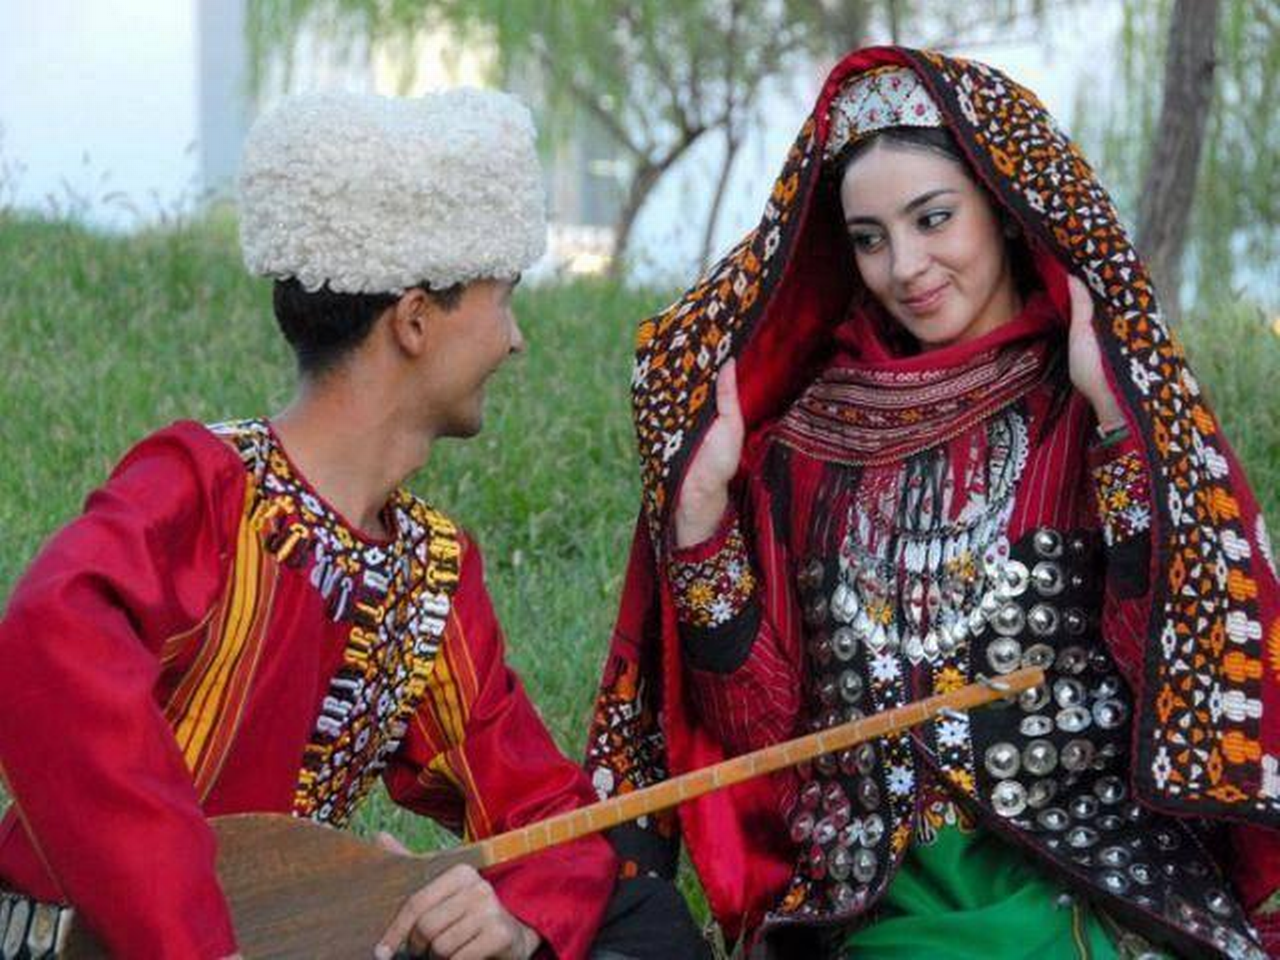 Turkmen Culture Through Art image